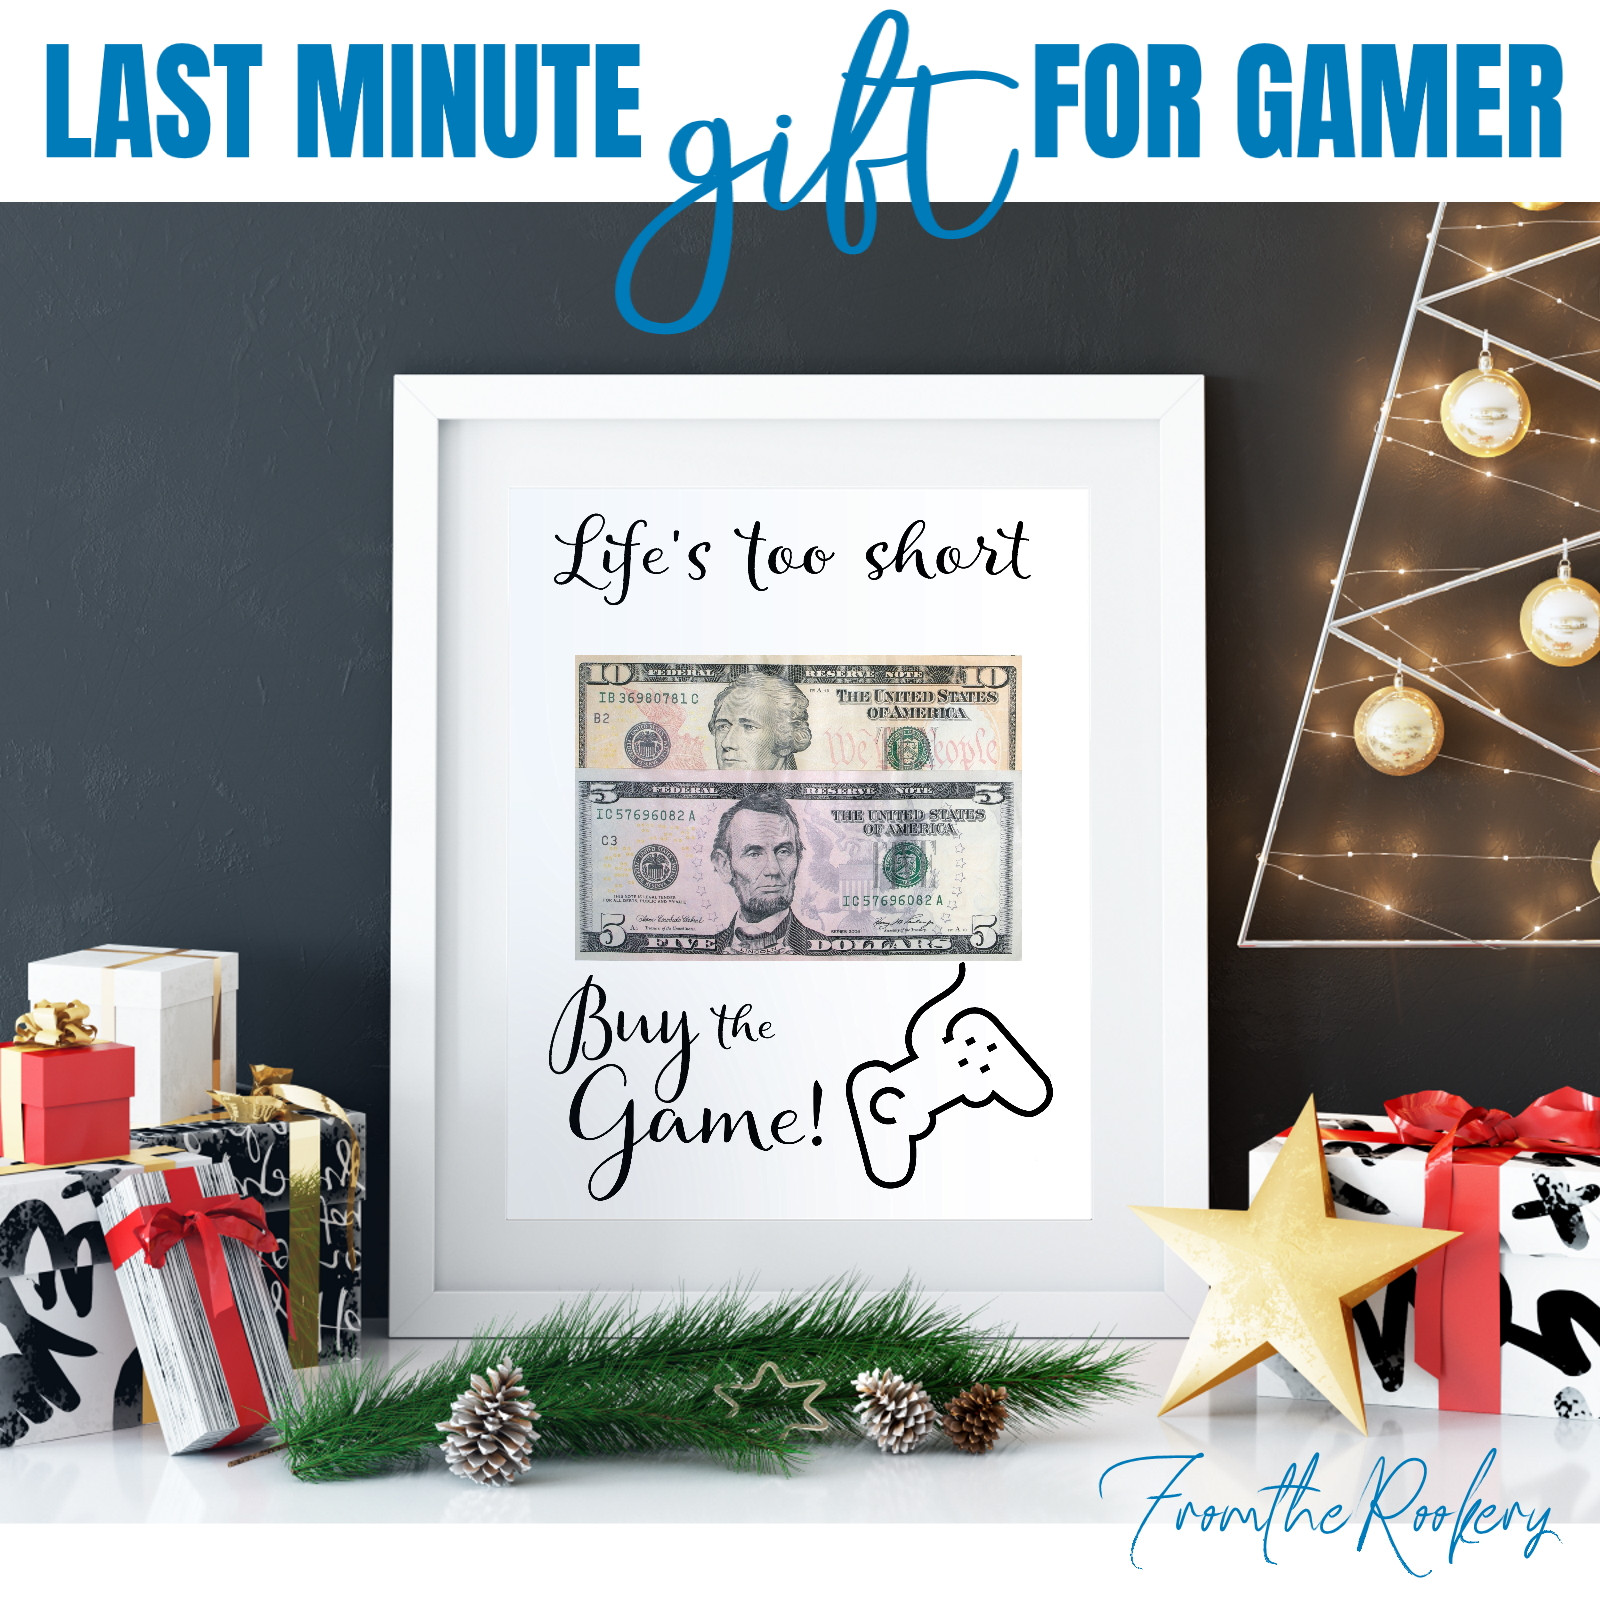 Last minute gift for gamer